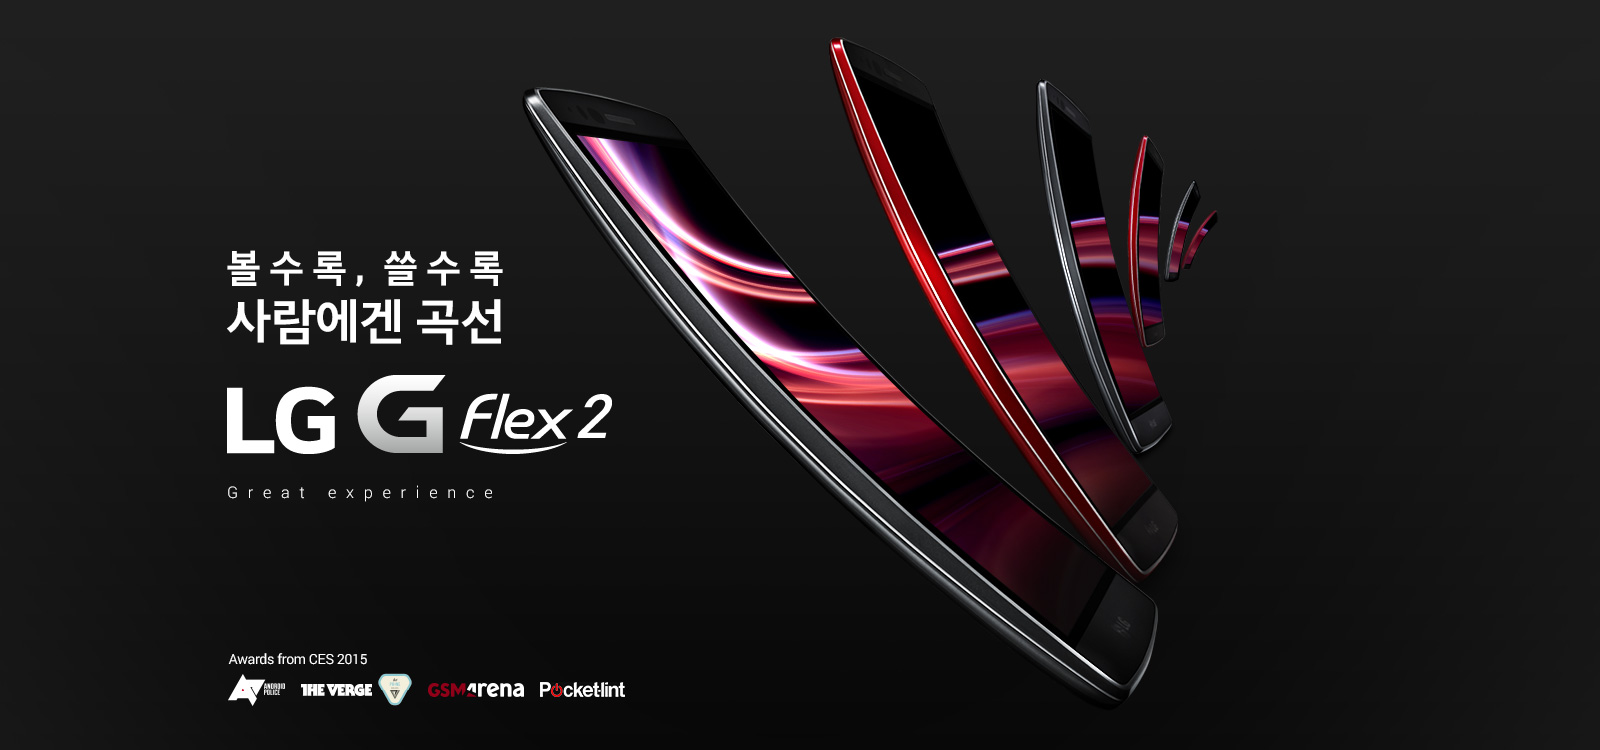 LG G Flex 2 ⓒ사진 제공 LG전자 G Flex2 공식 홈페이지